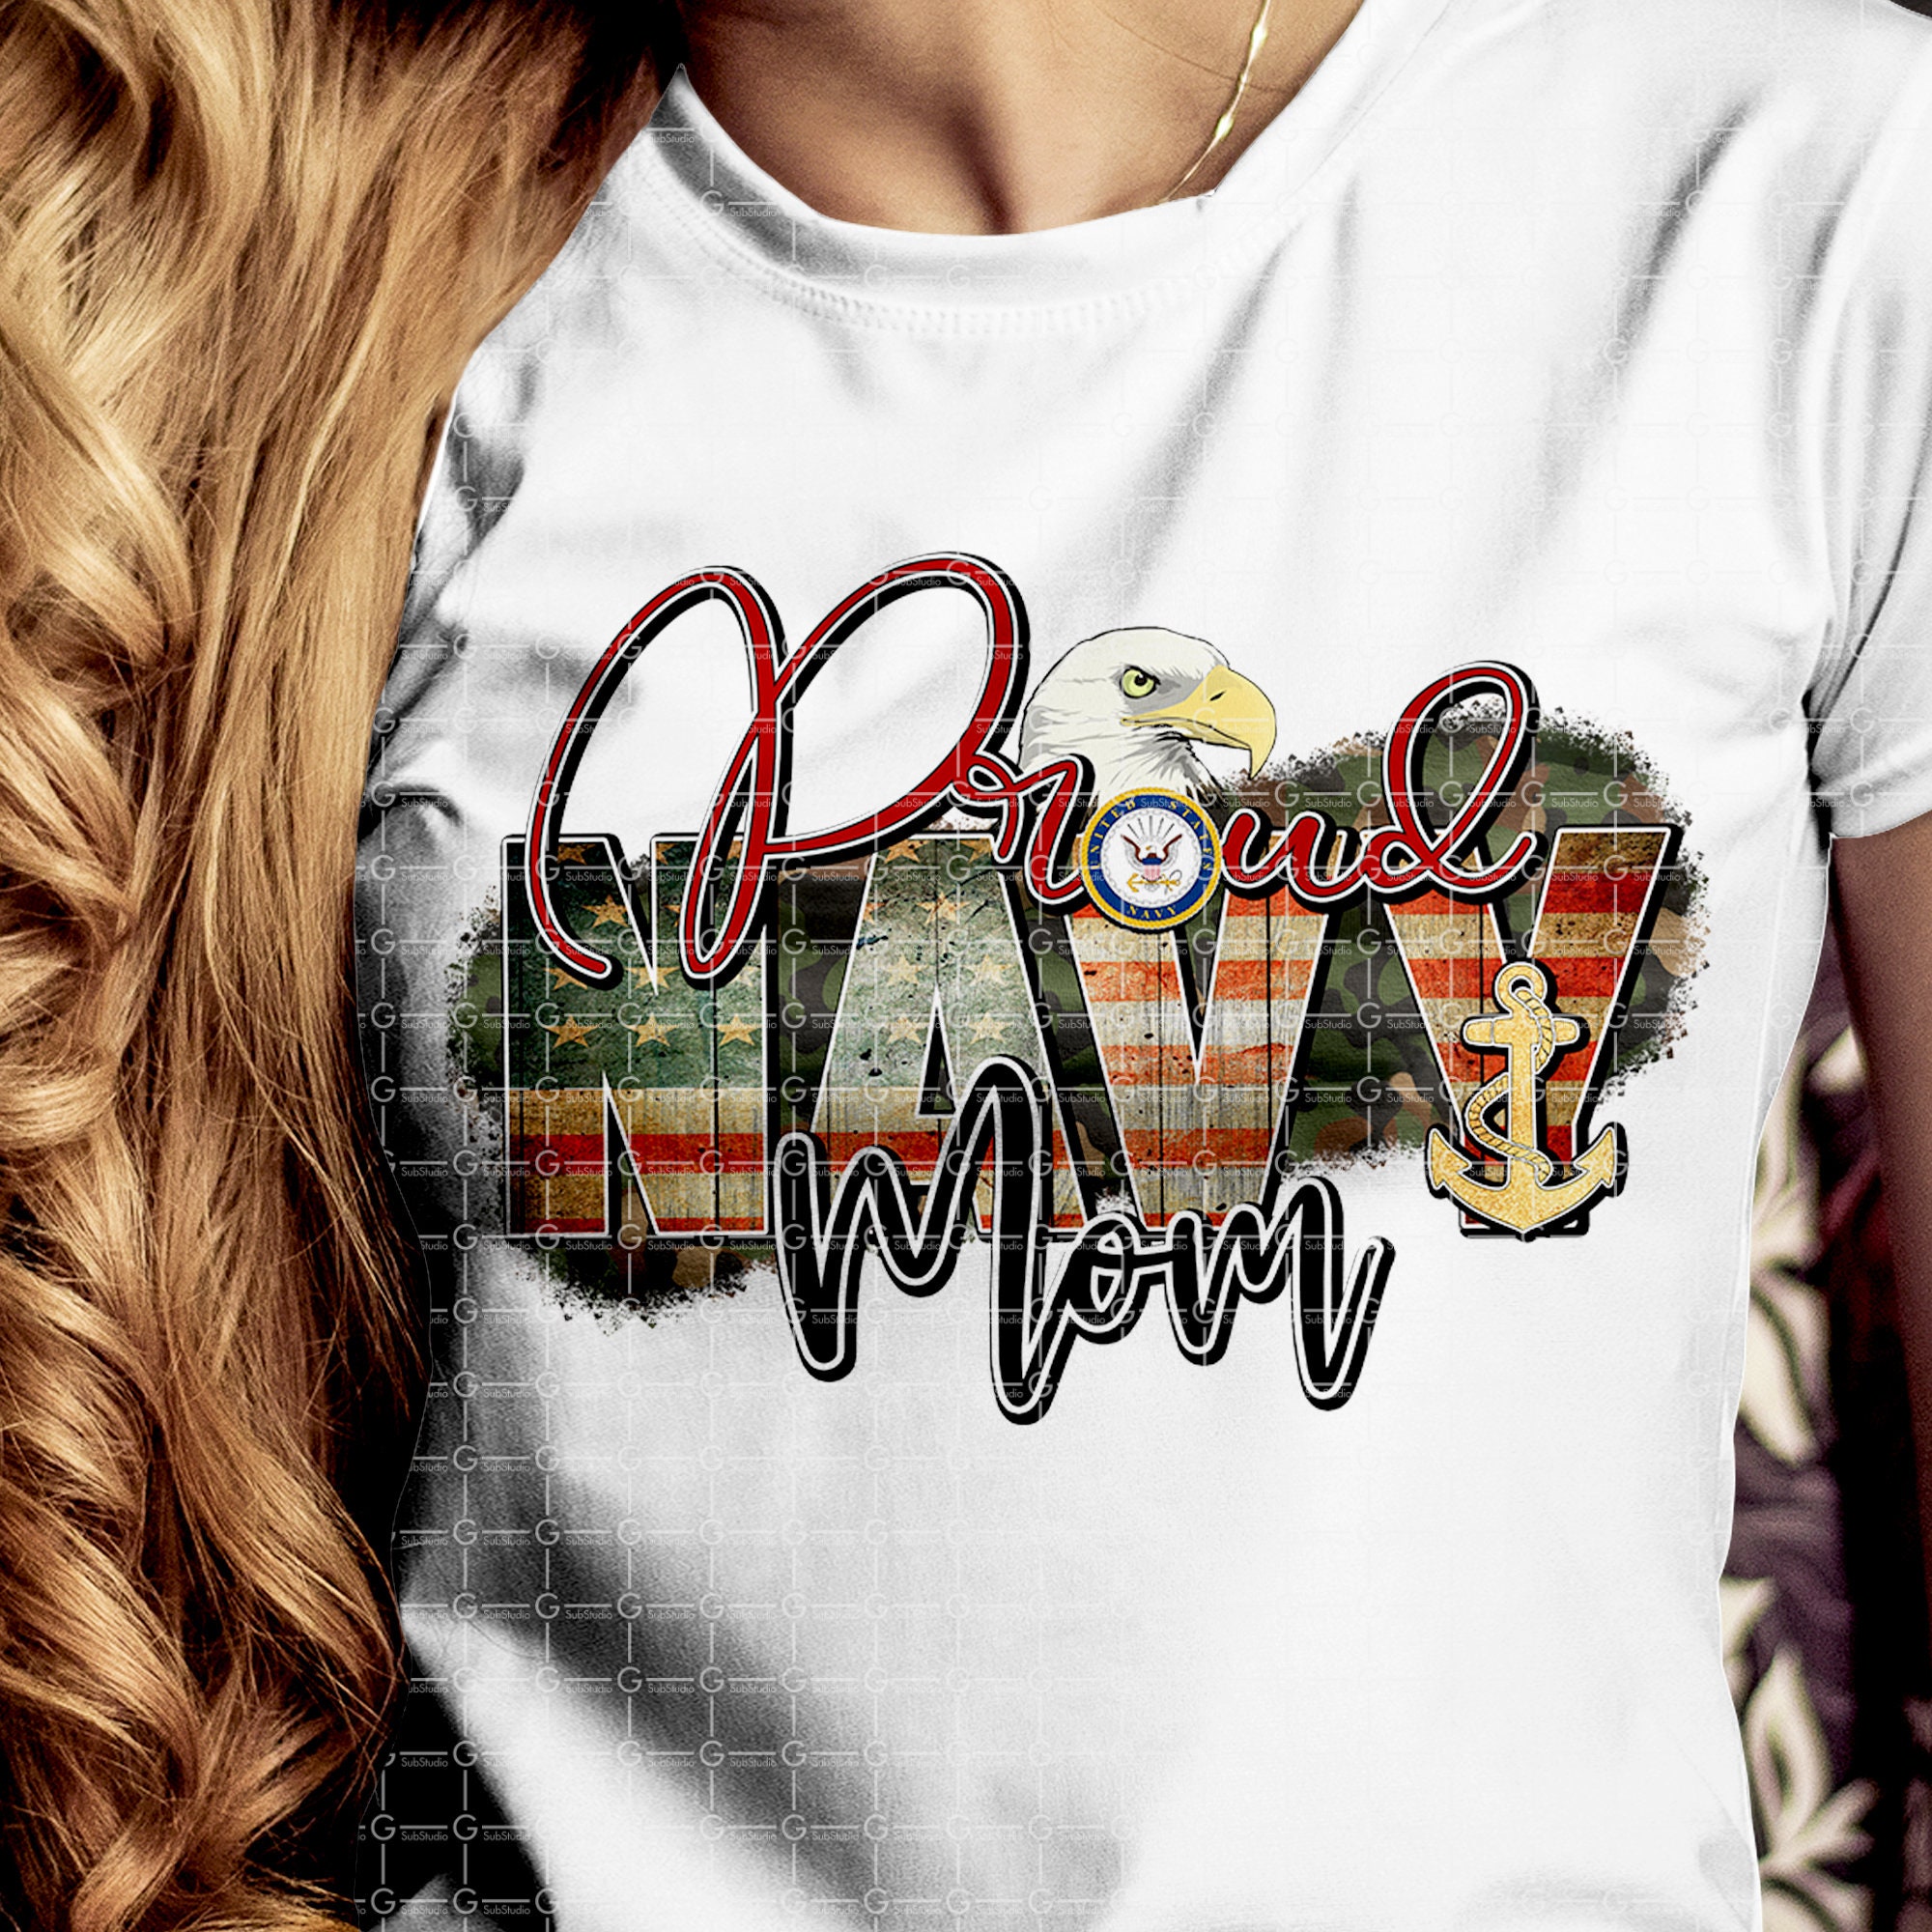 Proud Navy mom PNG file - Sublimation Design - Digital Download